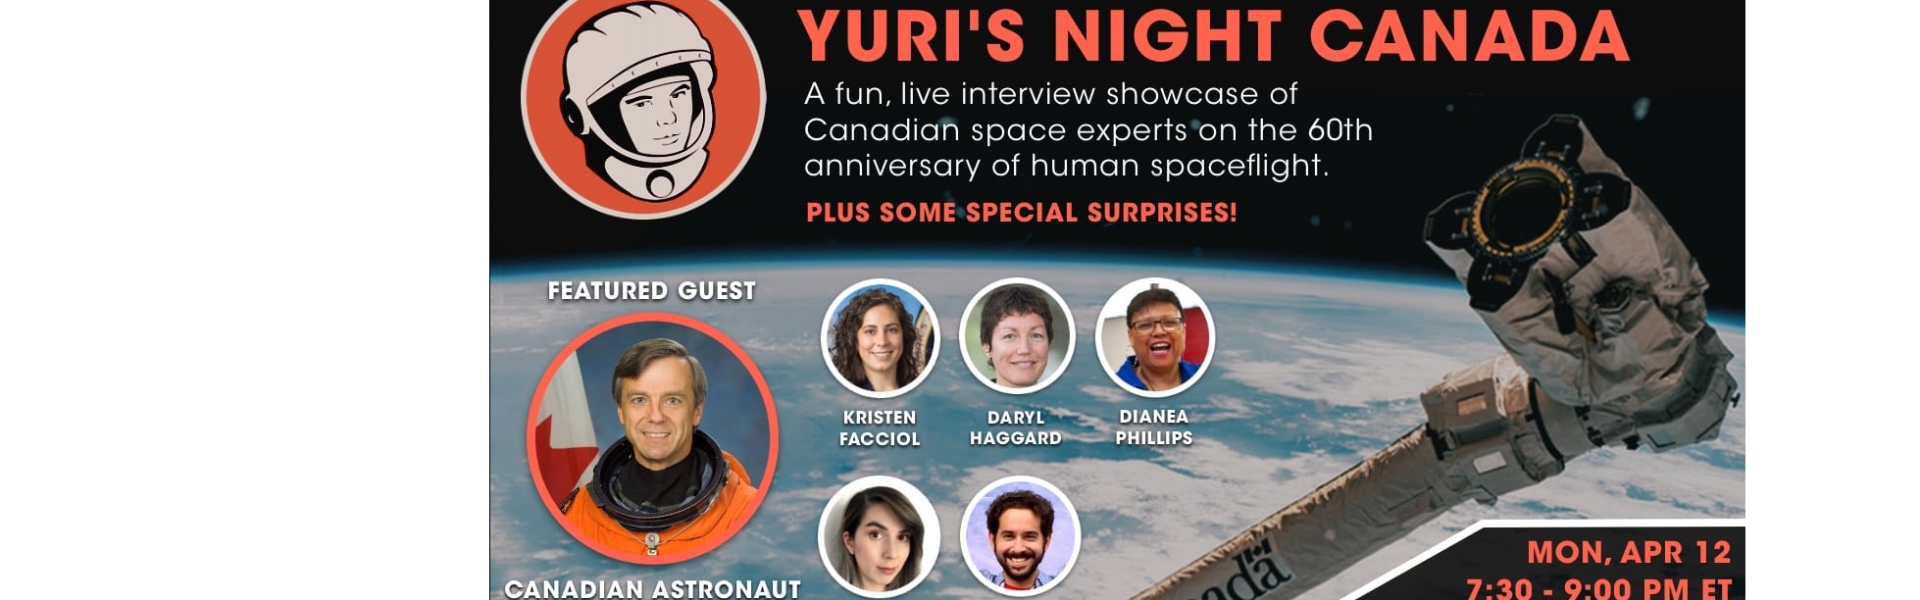 Yuri's Night Canada